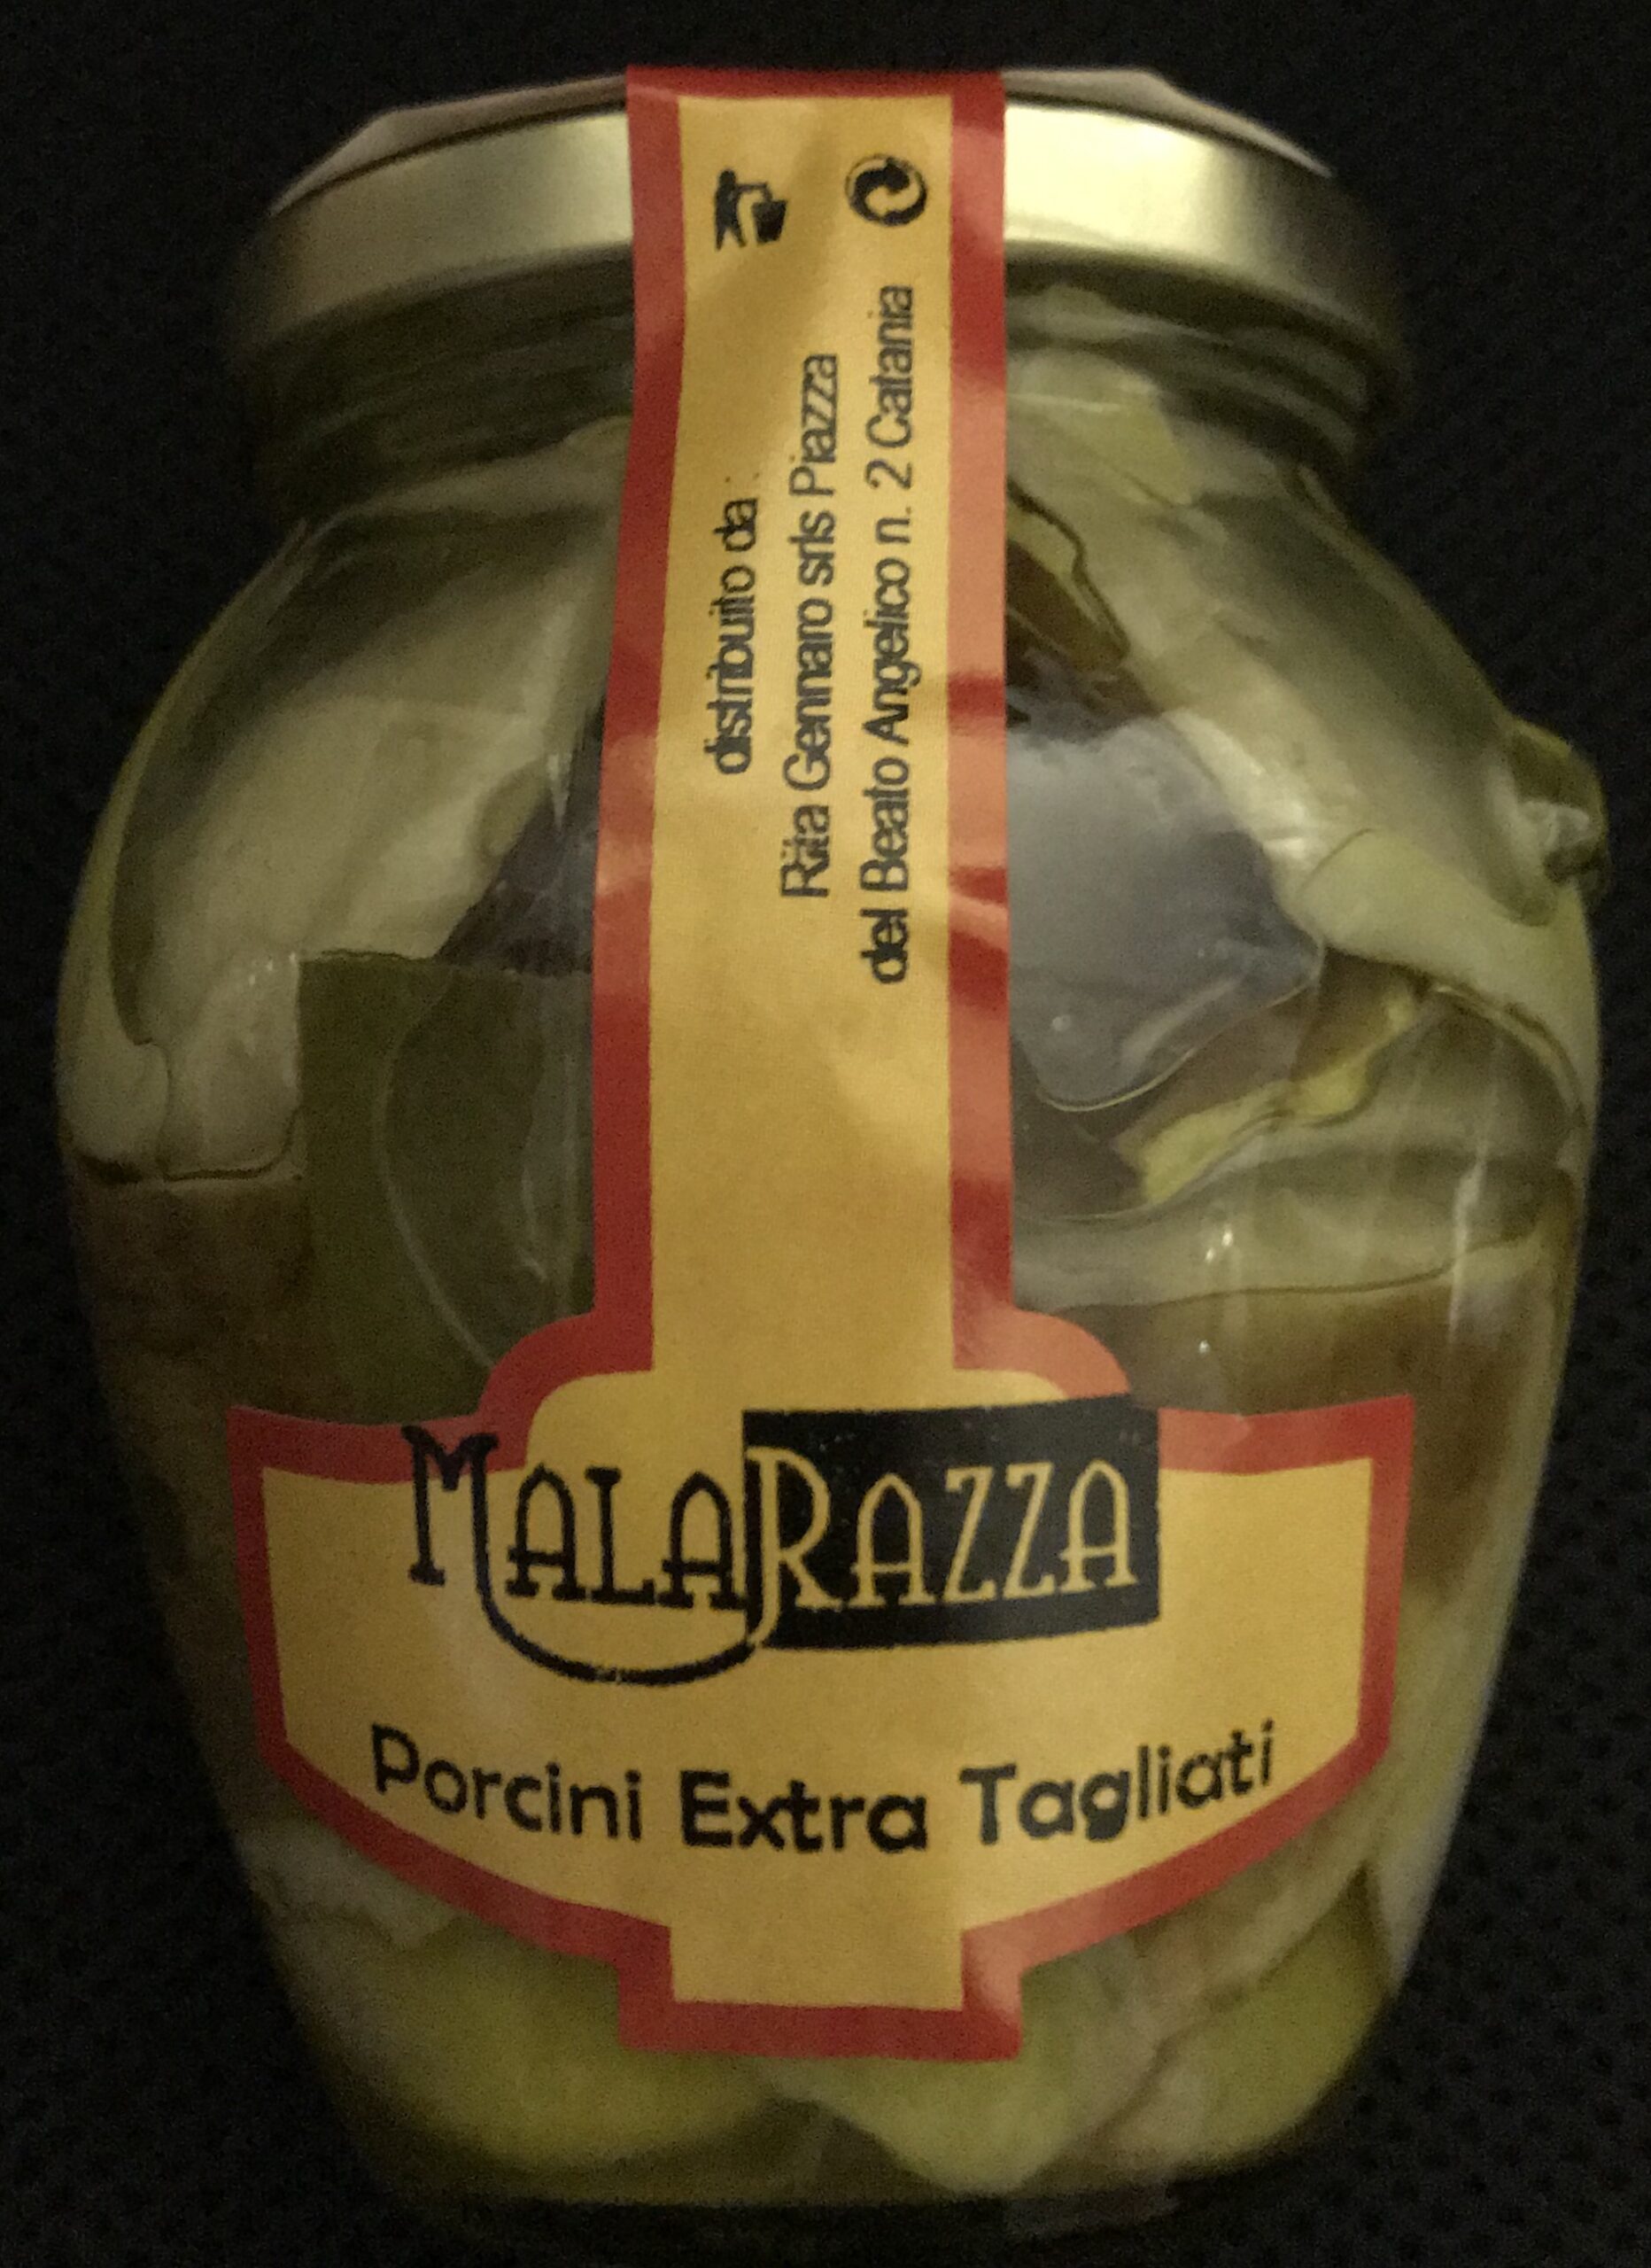 malarazza food made in italy fughi porcini extra tagliati